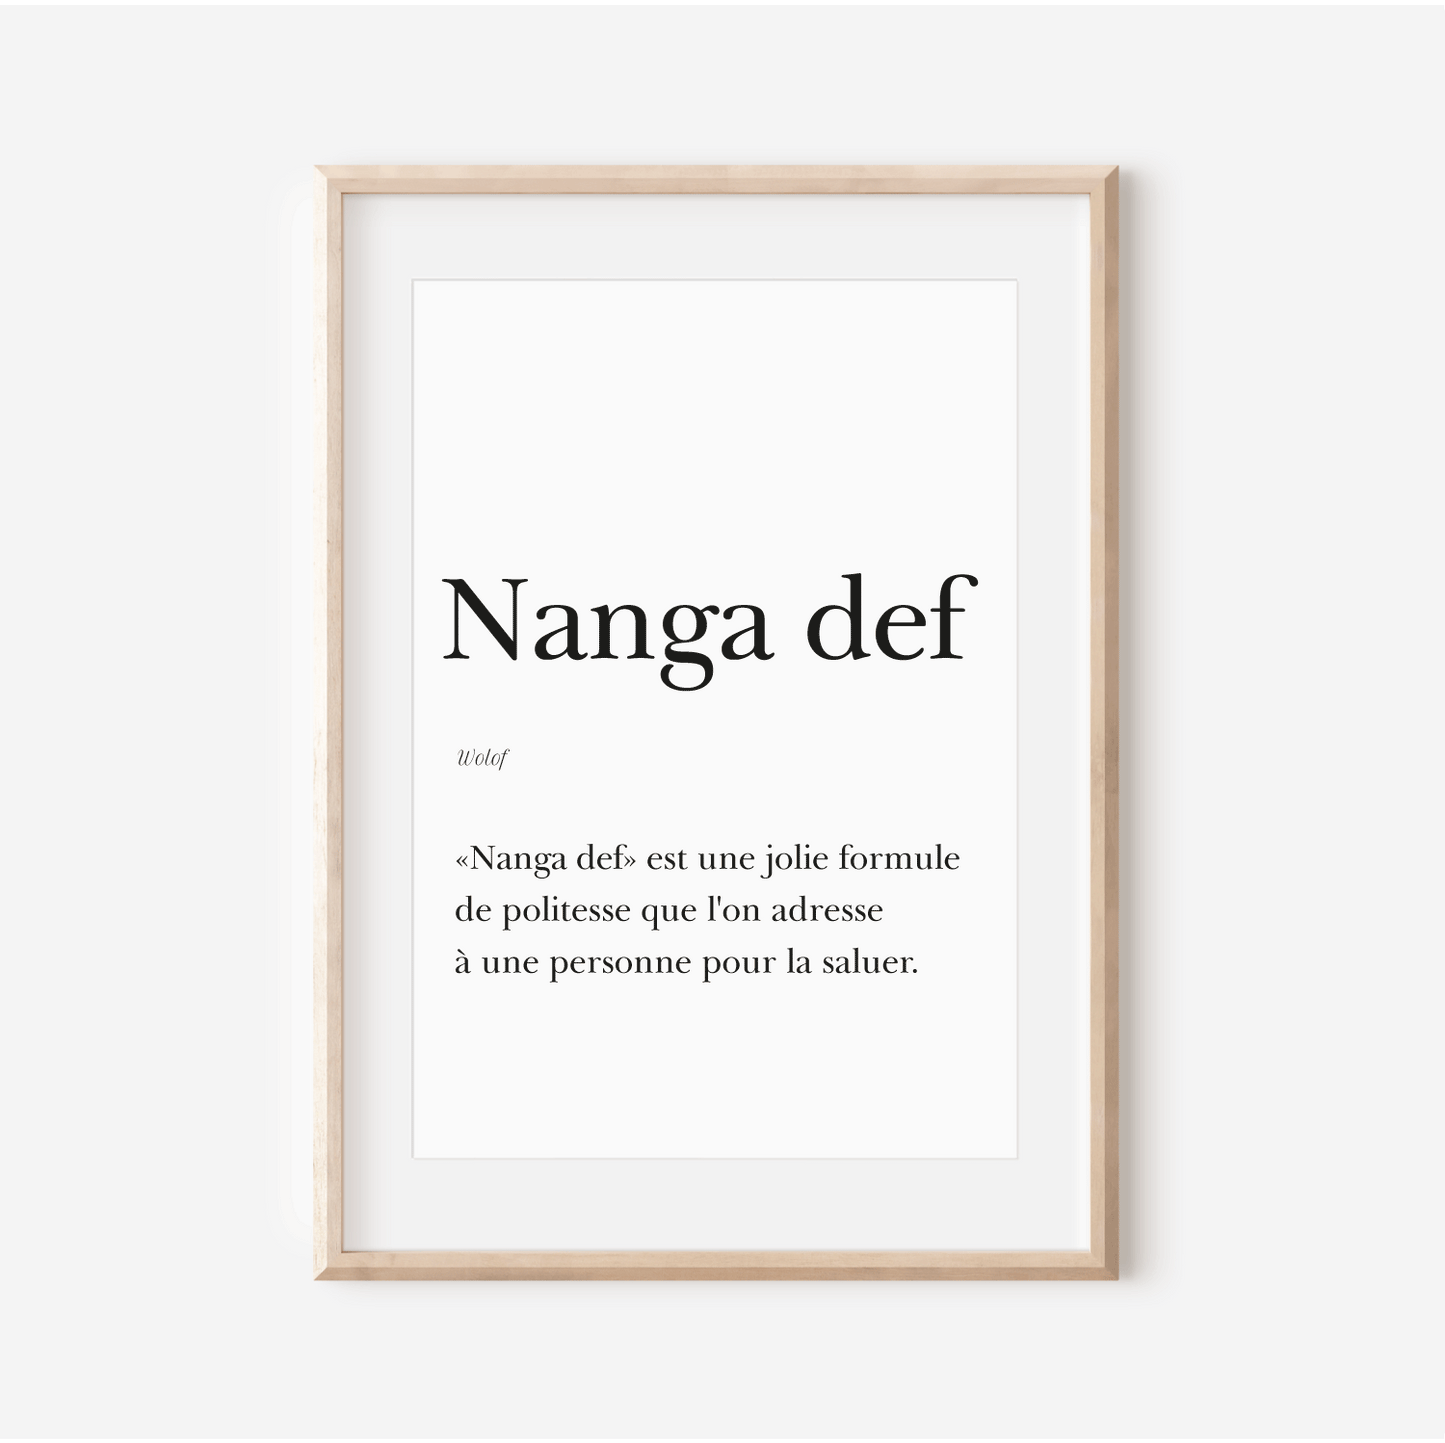 Affiche "Nanga def" - "Comment ça va?" en Wolof